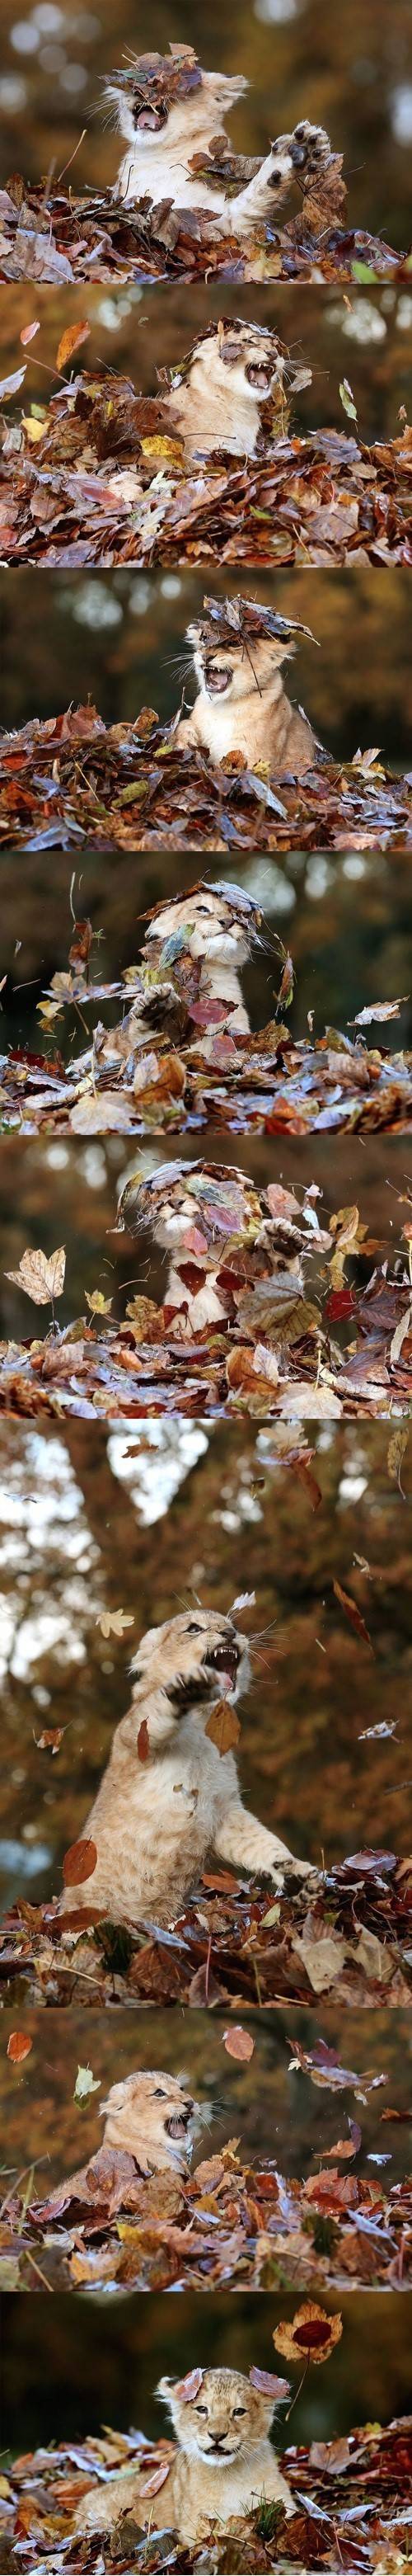 낙엽이 신기한 아기사자